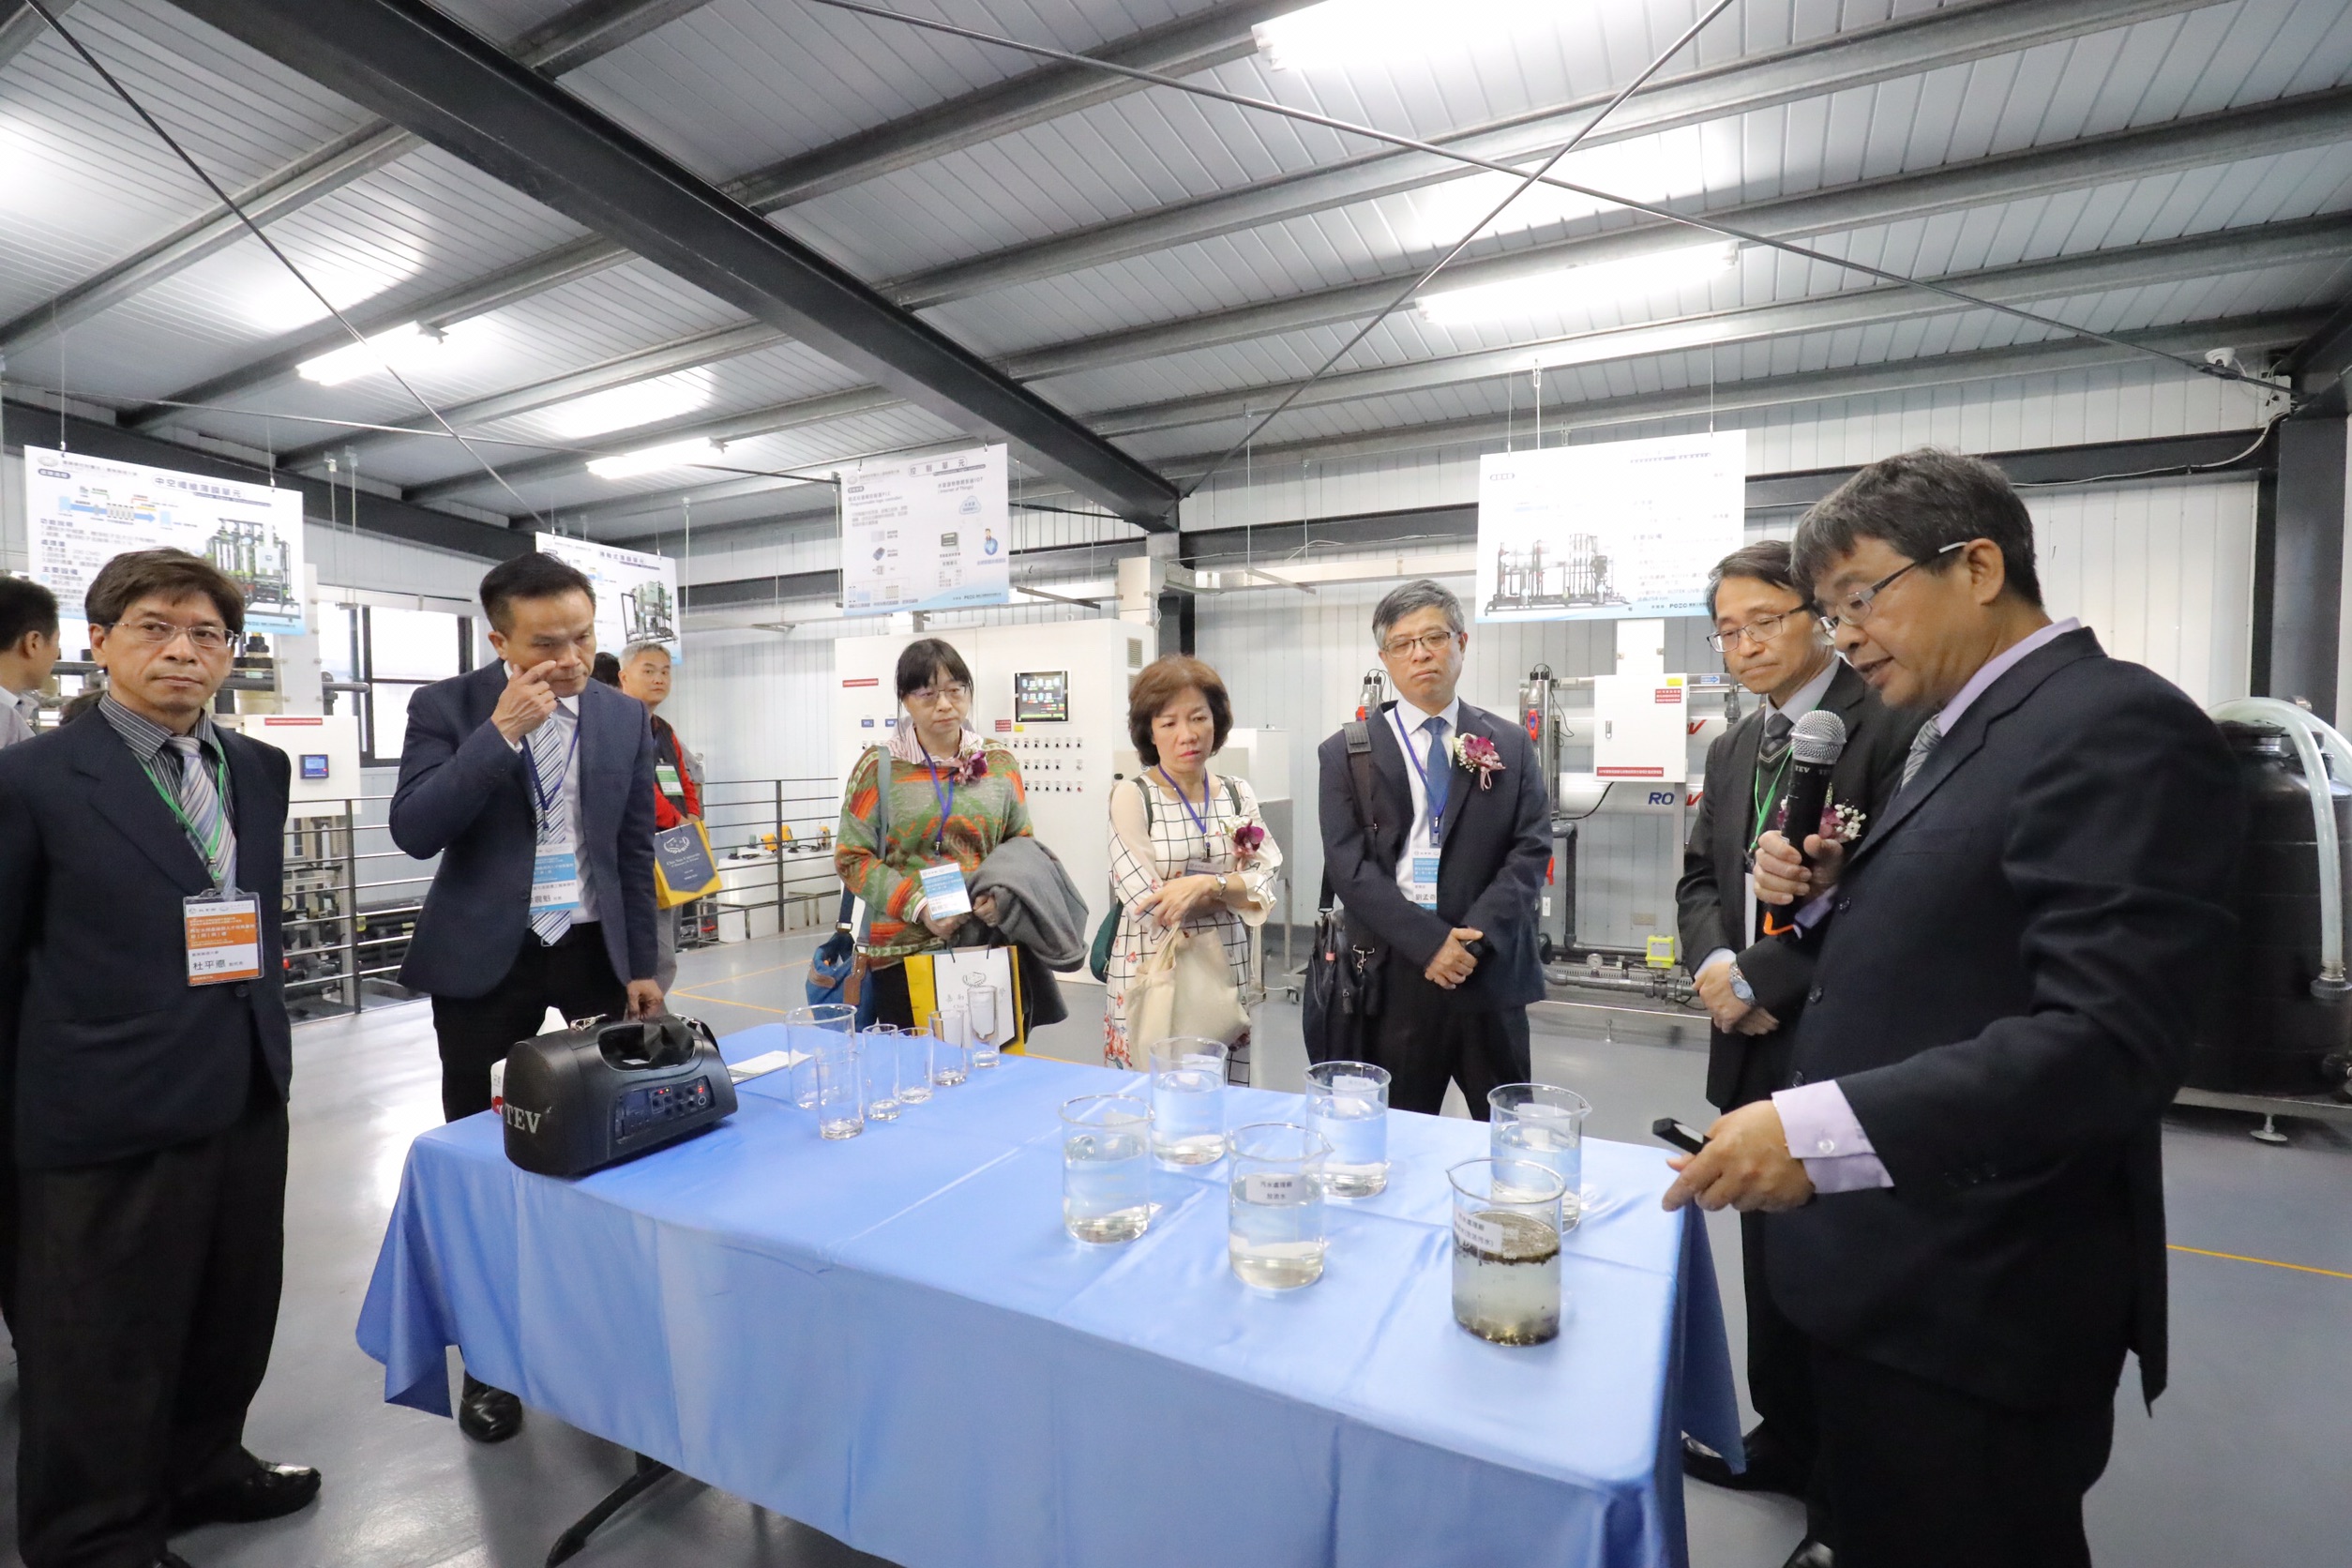 嘉藥環境學院院長林瑩峰向來訪貴賓介紹再生水過濾成果